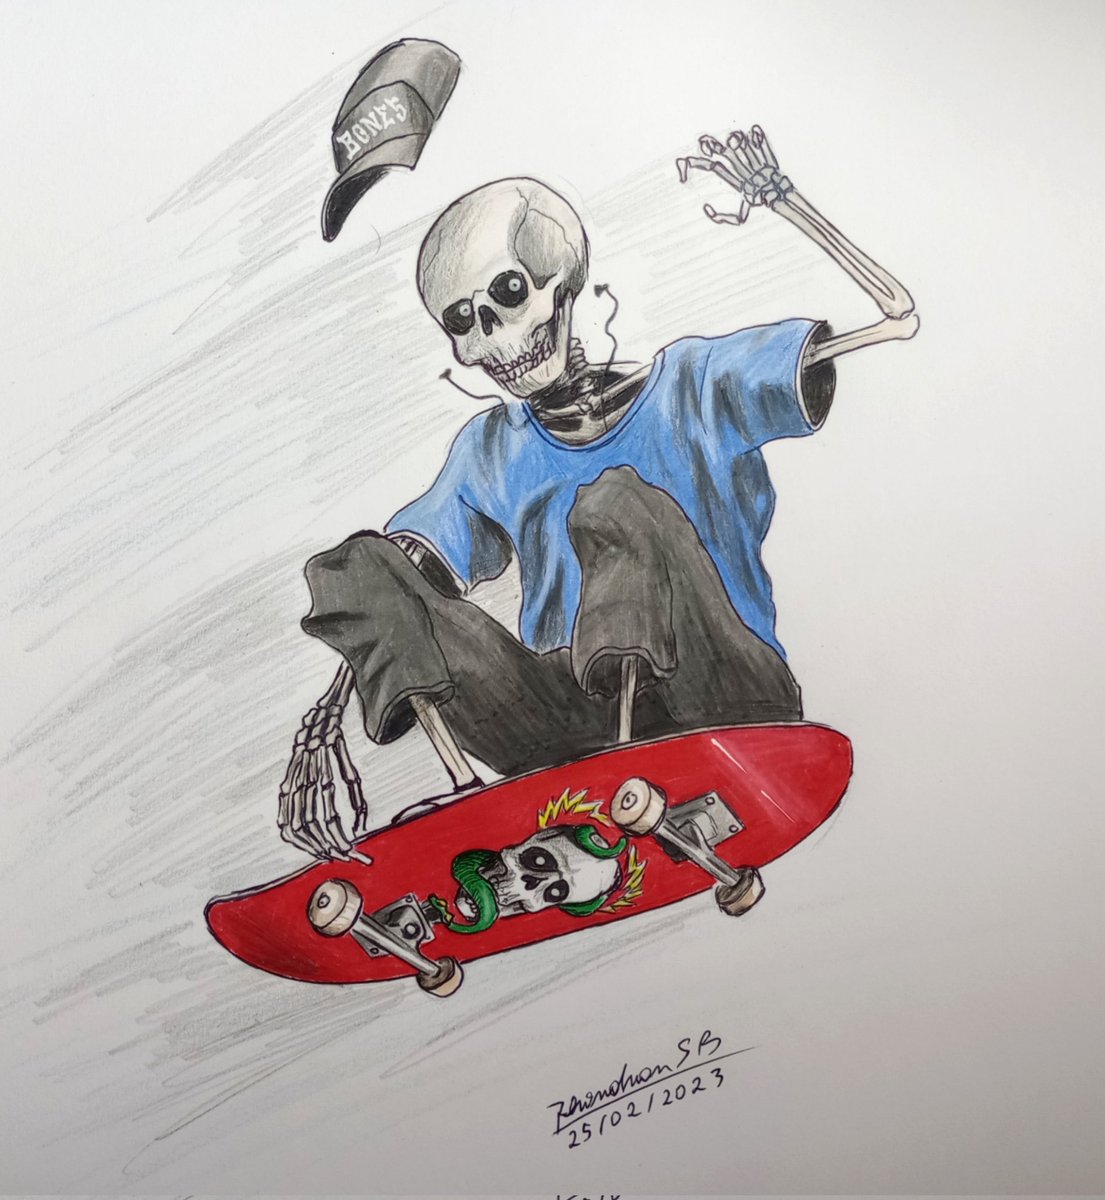 Bone Halks 
#powellperalta #skateboarding #skateart #desenhos